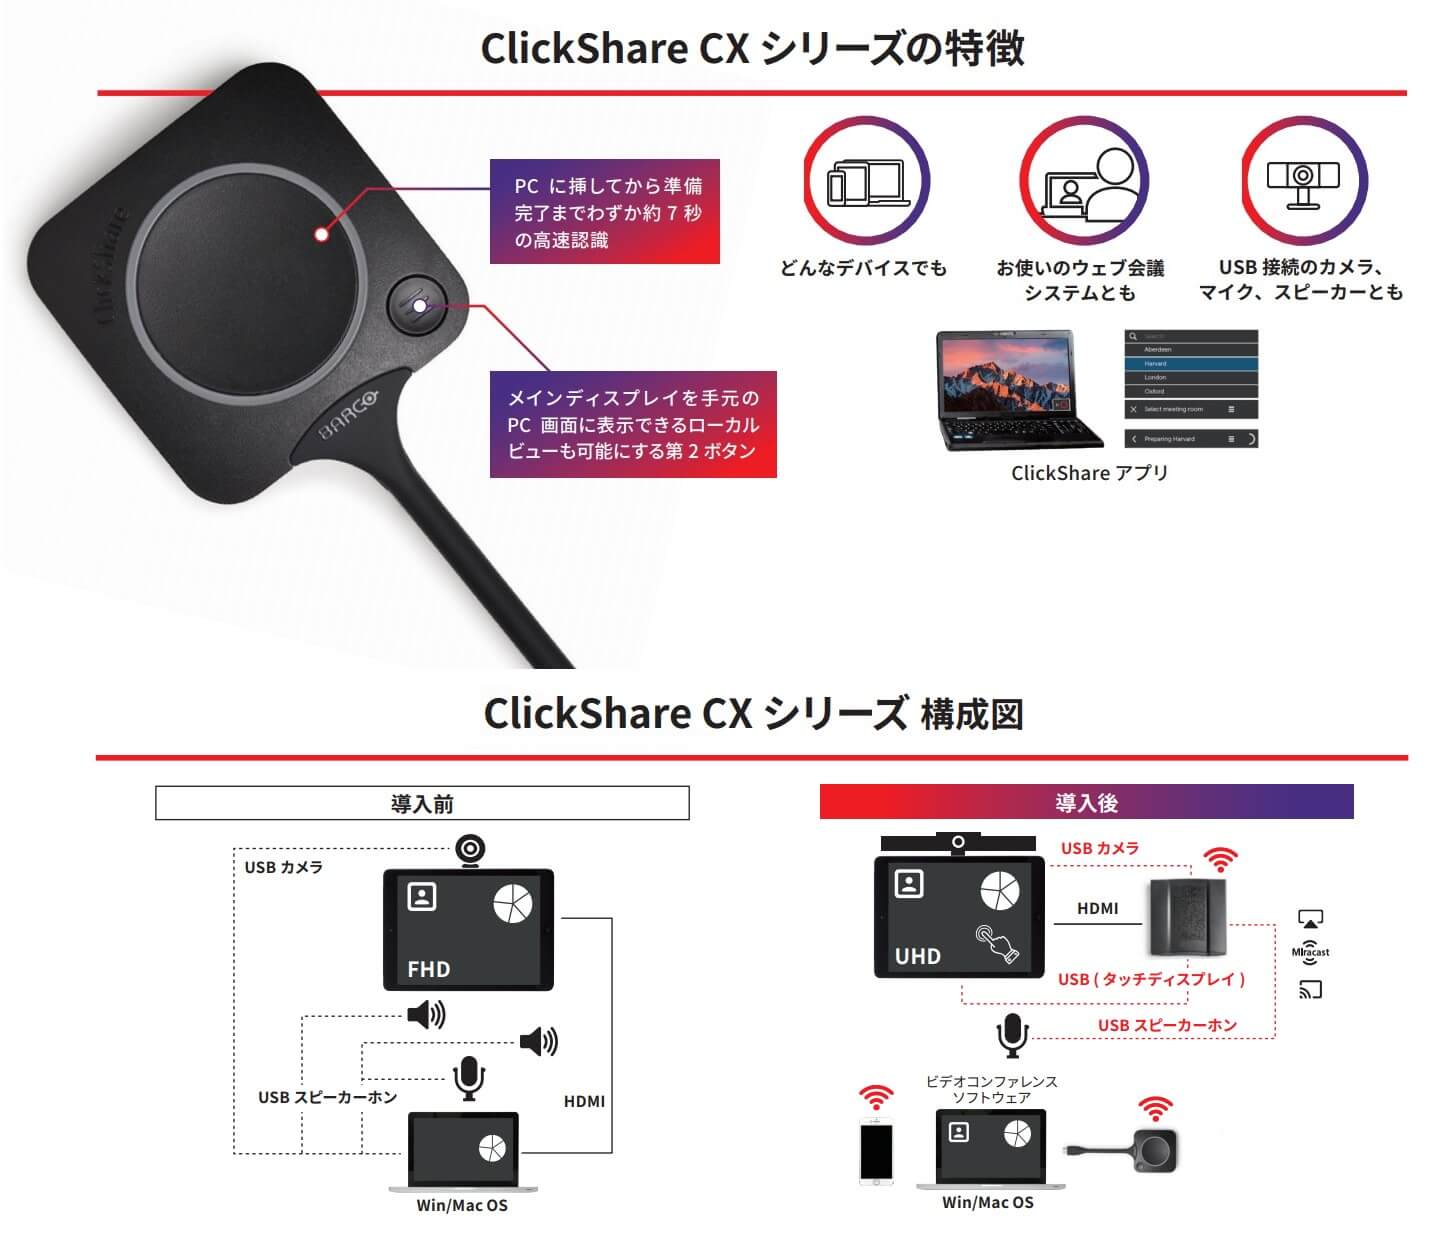 ClickShare CXシリーズ でコラボレーション